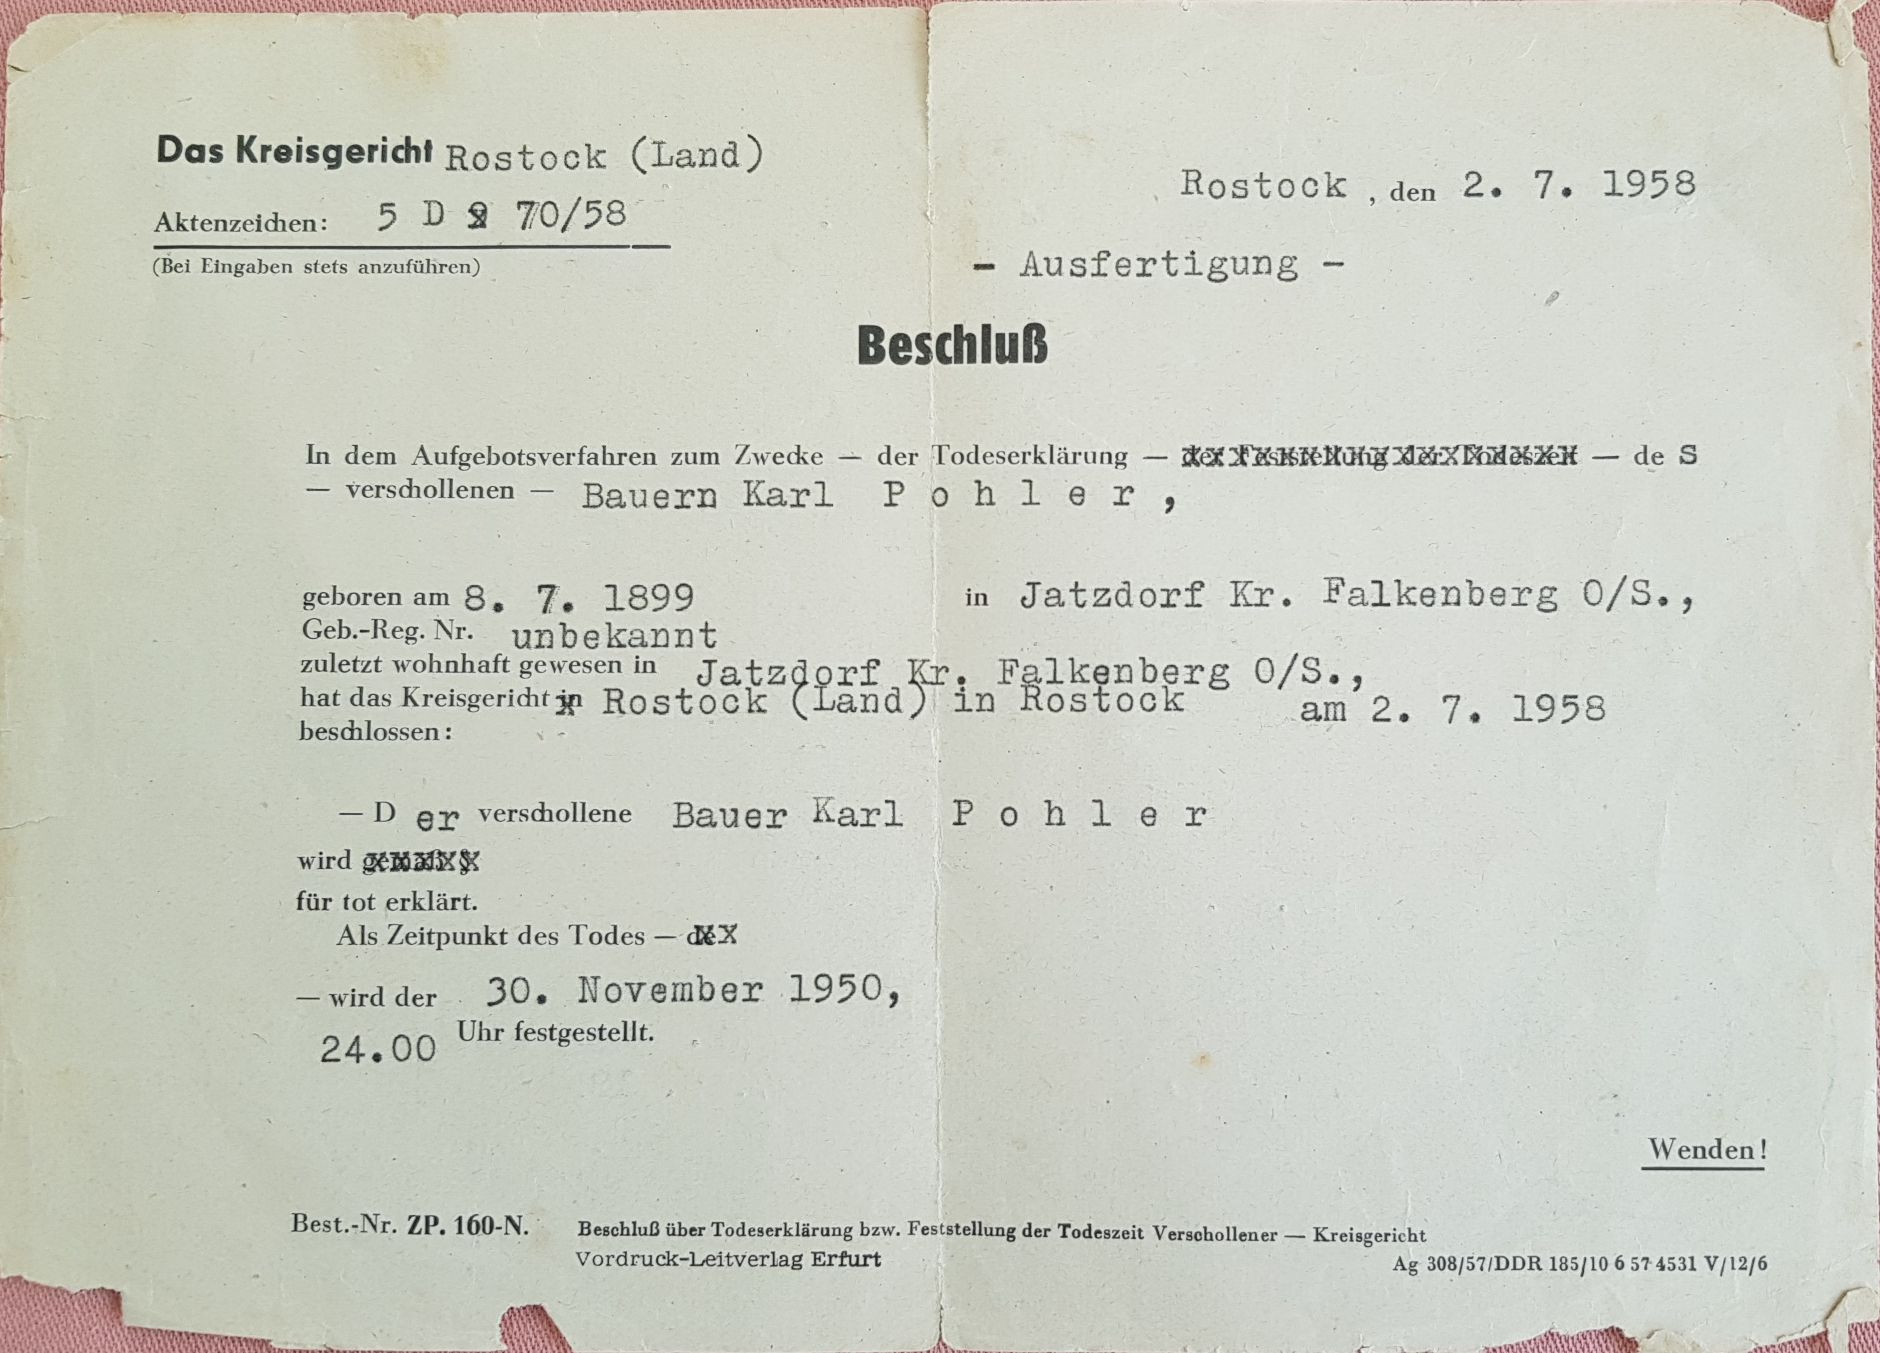 Pohler, Karl_amtliche Todeserklärung (Seite1)